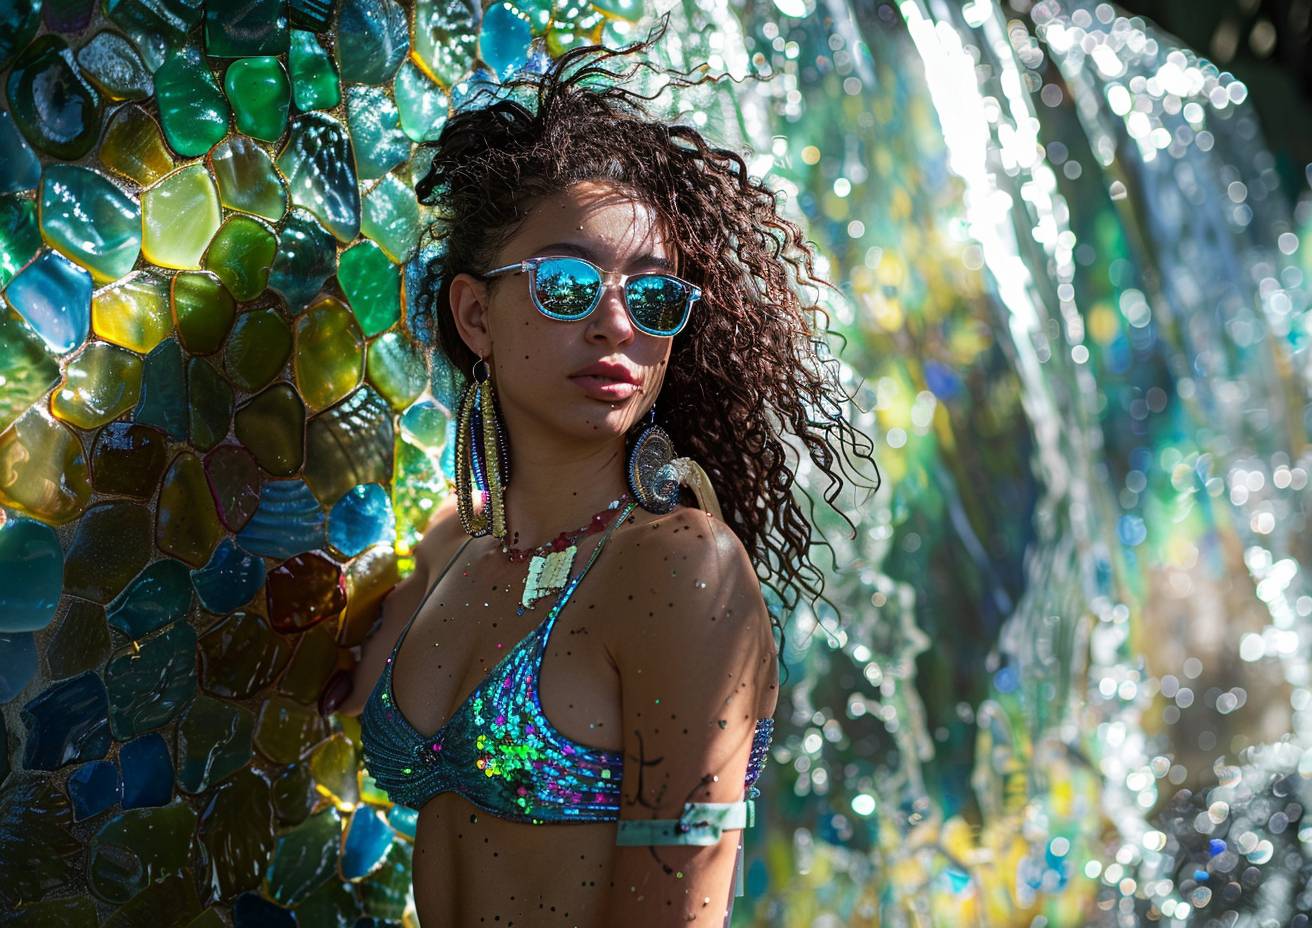 シーグラスモザイク、緻密なディテール、Y2Kヒップホップファッションを身に着けた若い女性が滝の前でポーズを取る、水、日差し